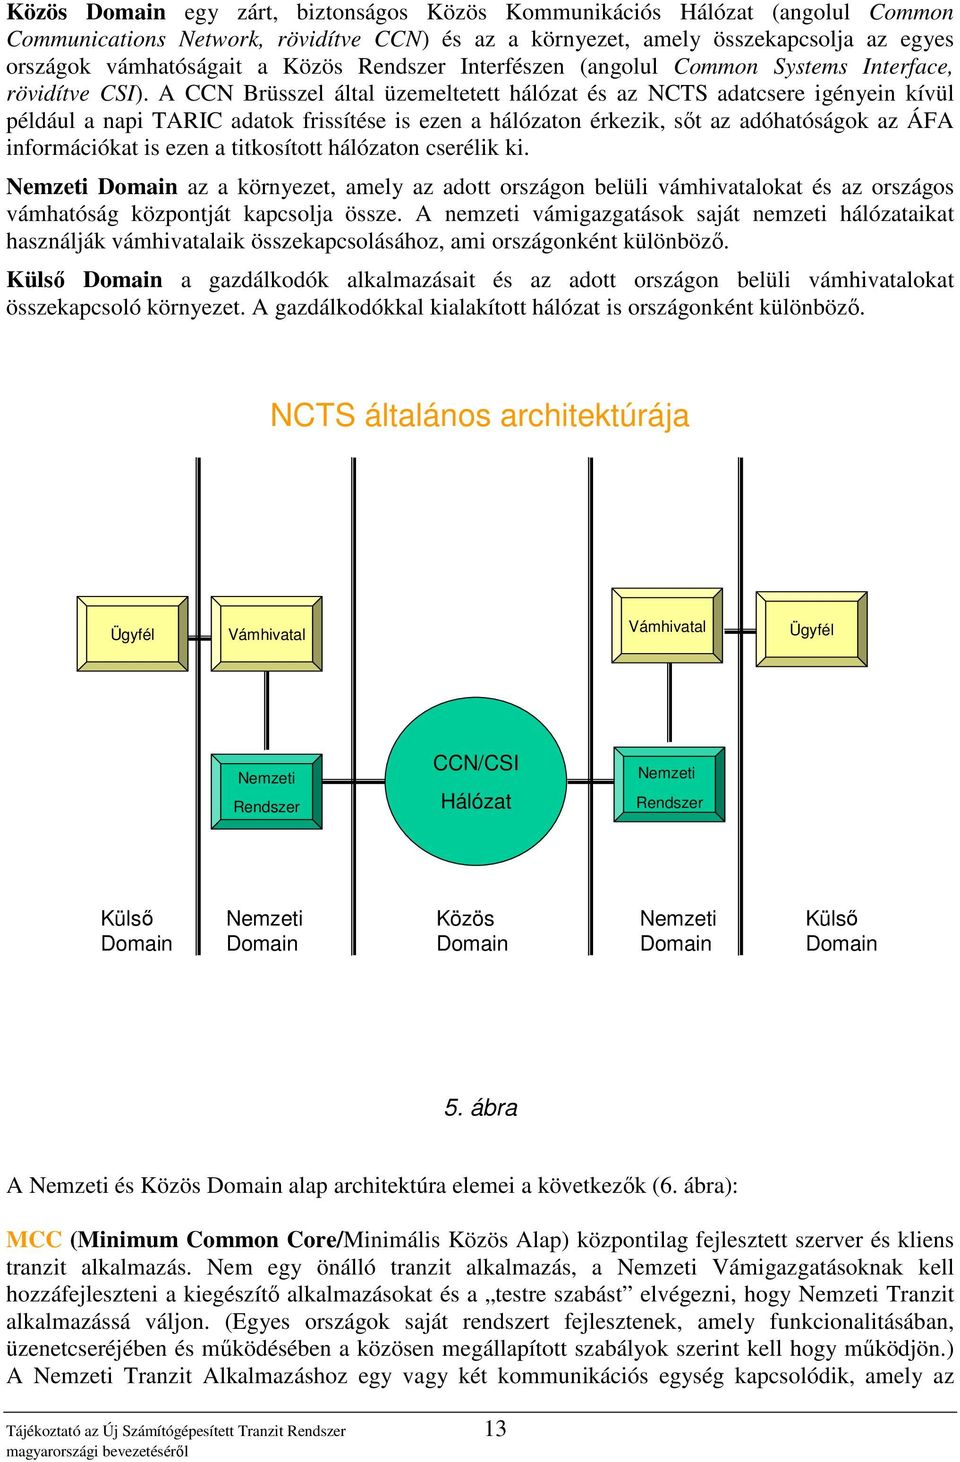 A CCN Brüsszel által üzemeltetett hálózat és az NCTS adatcsere igényein kívül például a napi TARIC adatok frissítése is ezen a hálózaton érkezik, sıt az adóhatóságok az ÁFA információkat is ezen a